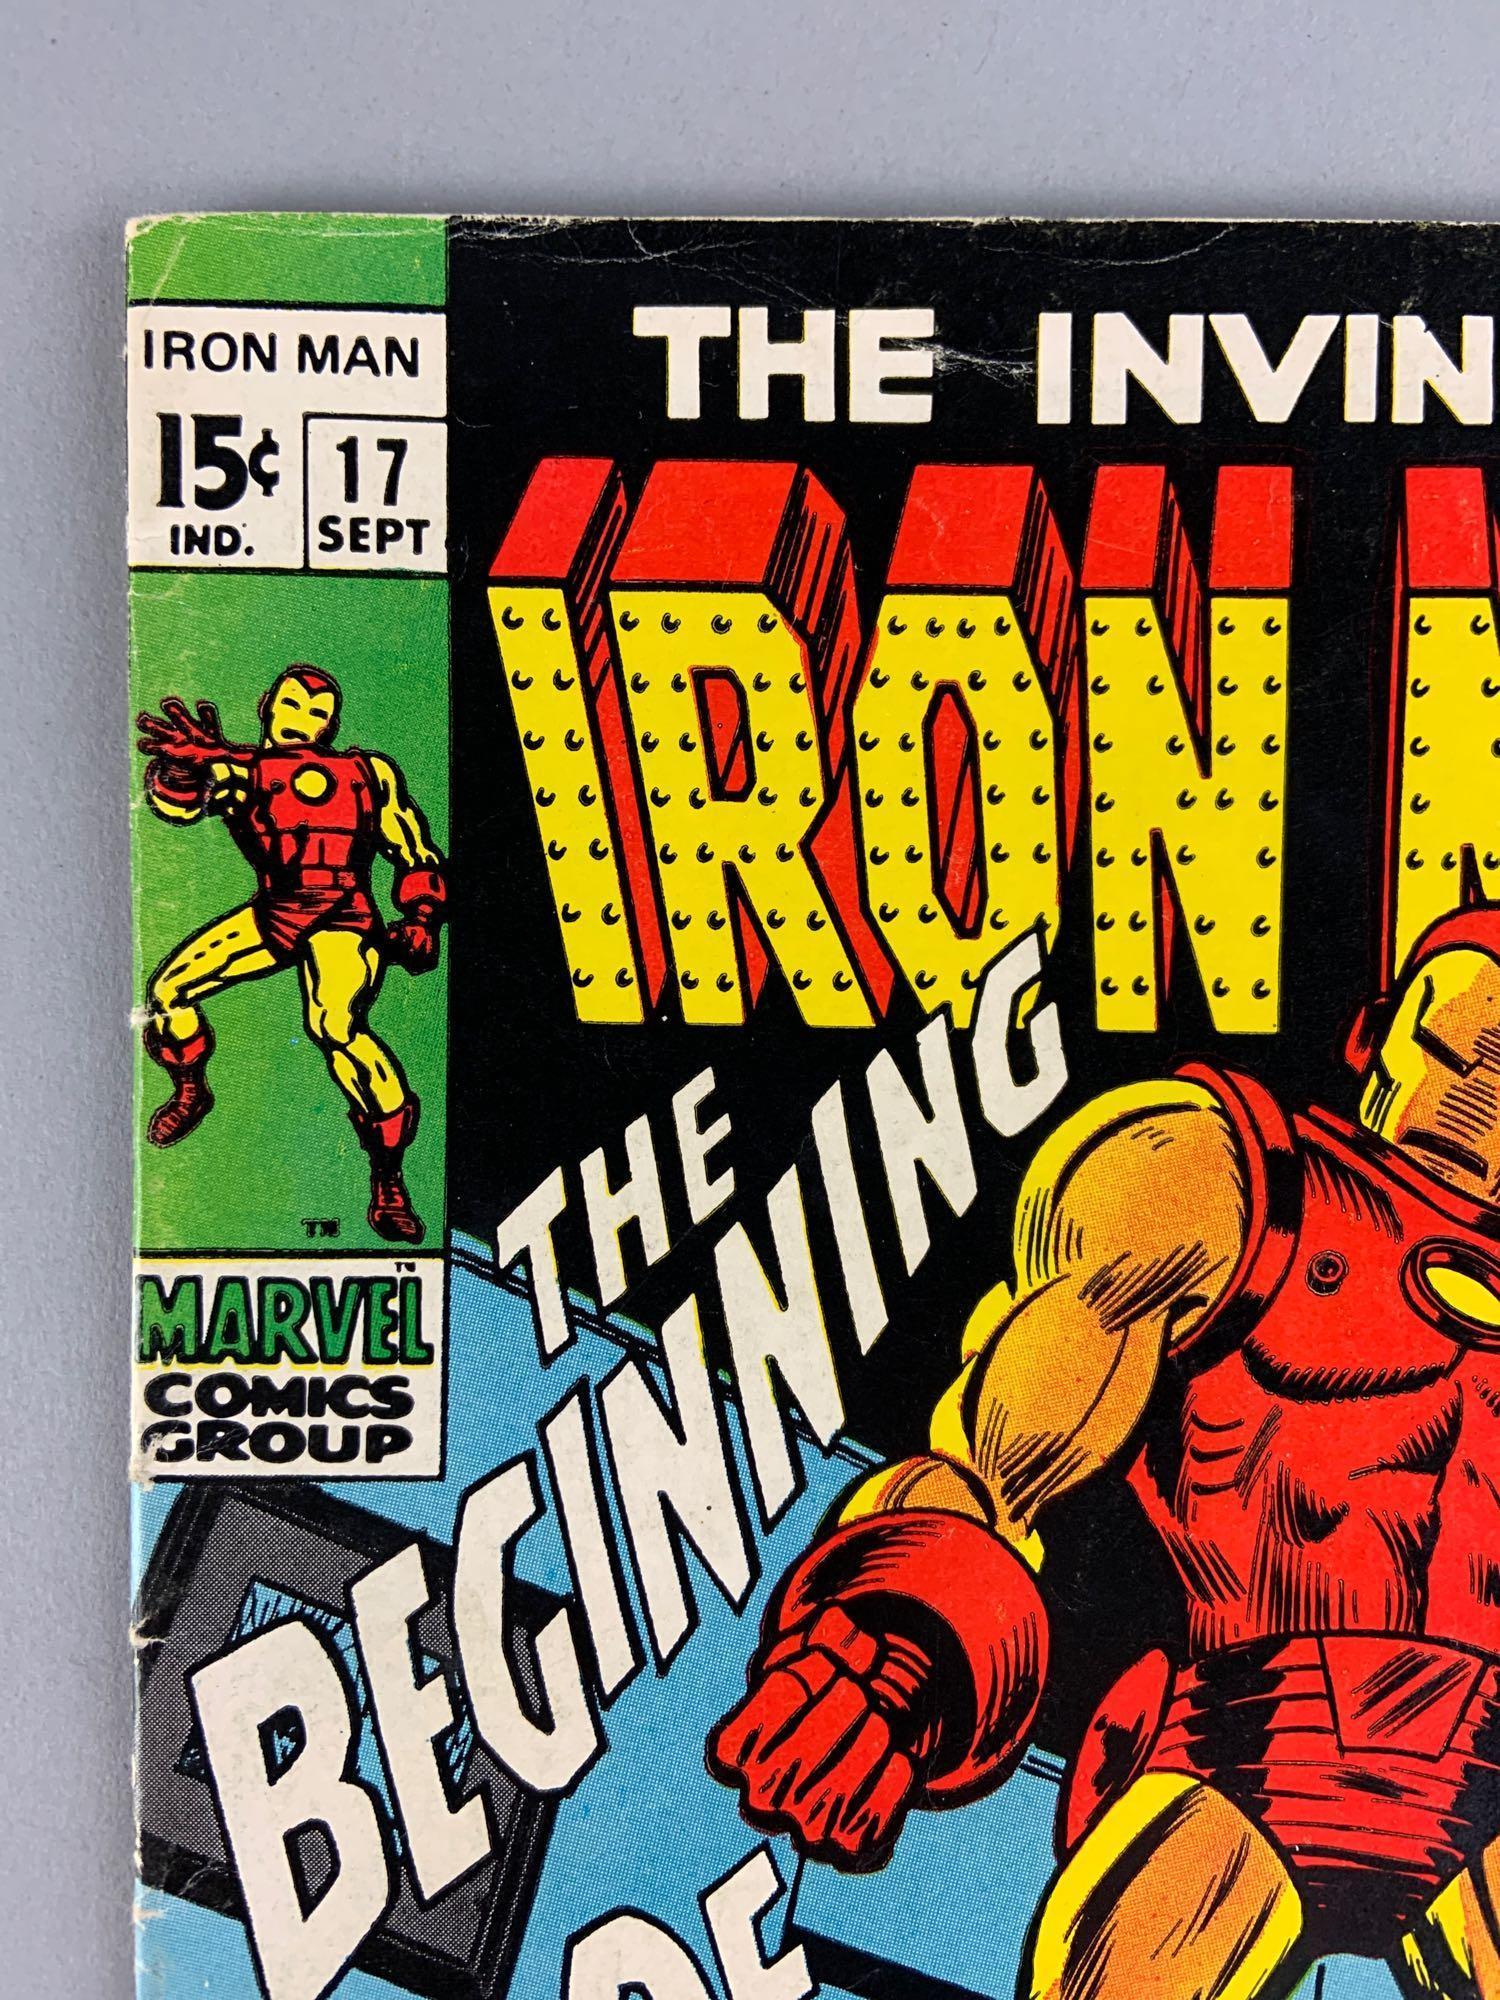 Marvel Comics The Invincible Iron Man No. 17 Comic Book